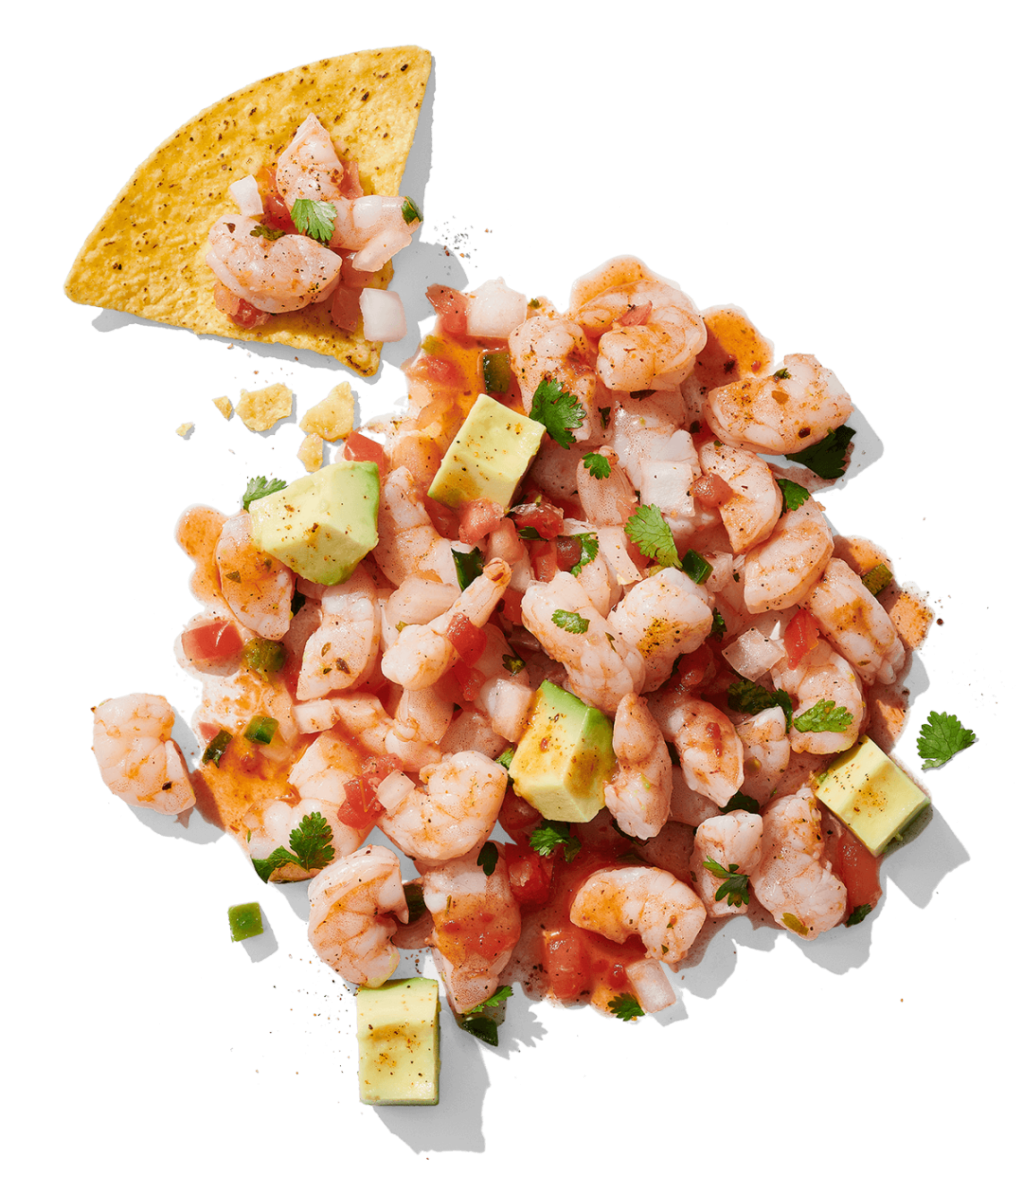 Image of citrus-avocado shrimp salad